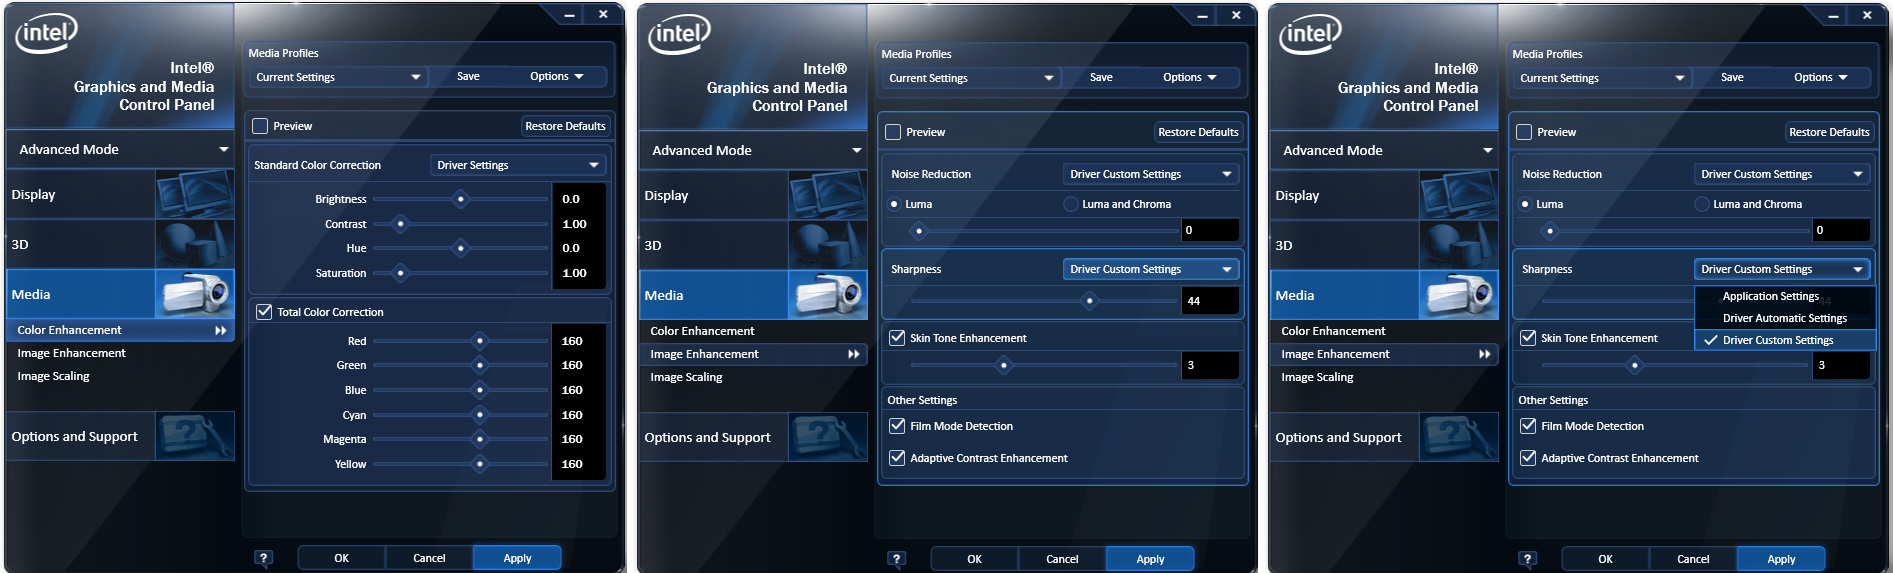 Настройка intel graphics. Параметры графики Интел. Intel приложение. Панель управления графикой и Медиа Intel. Intel программа.